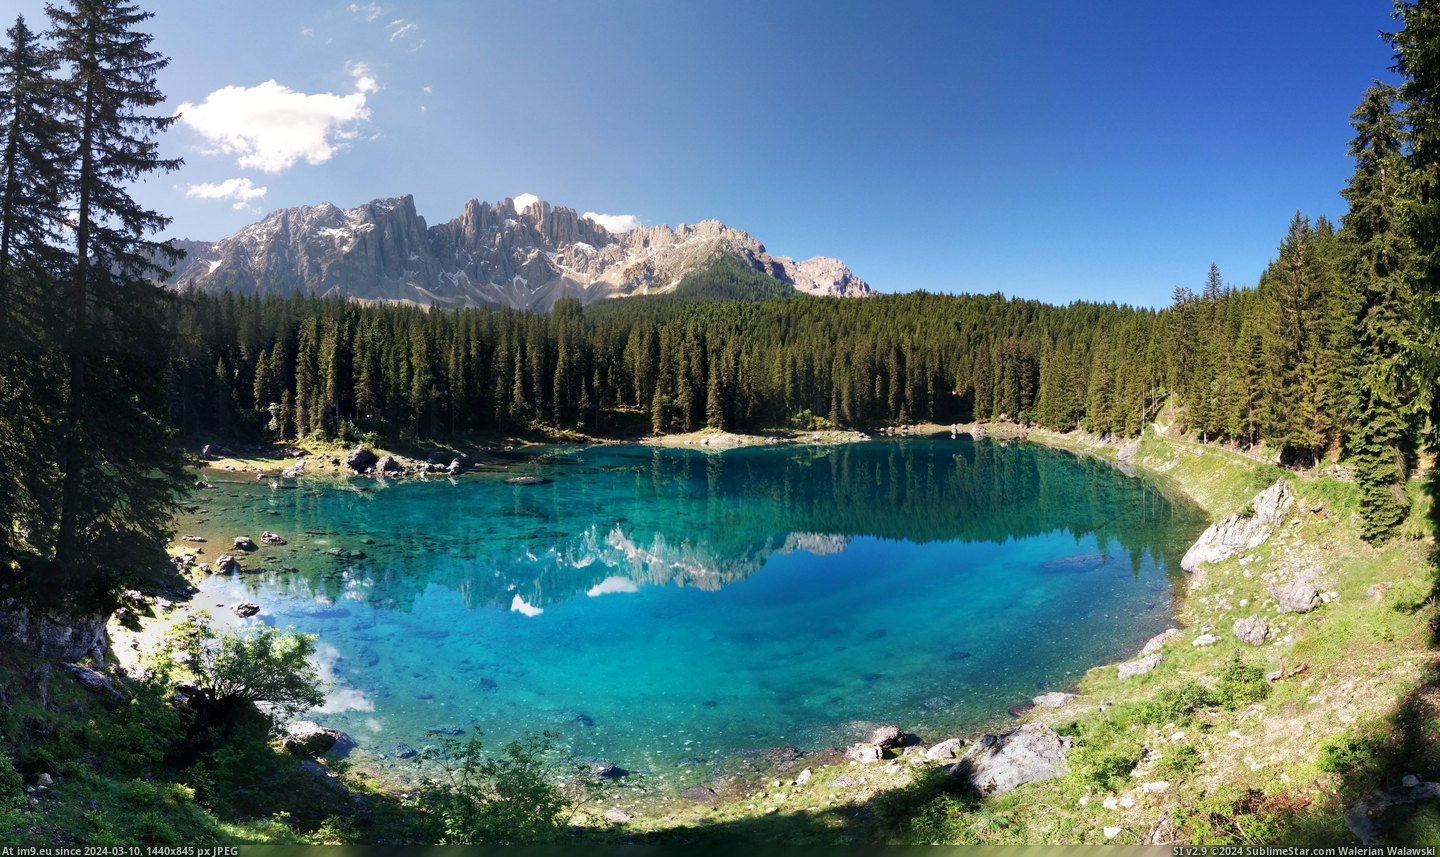  #Lago  [Earthporn] Lago di Carezza [7720x4540] Pic. (Obraz z album My r/EARTHPORN favs))